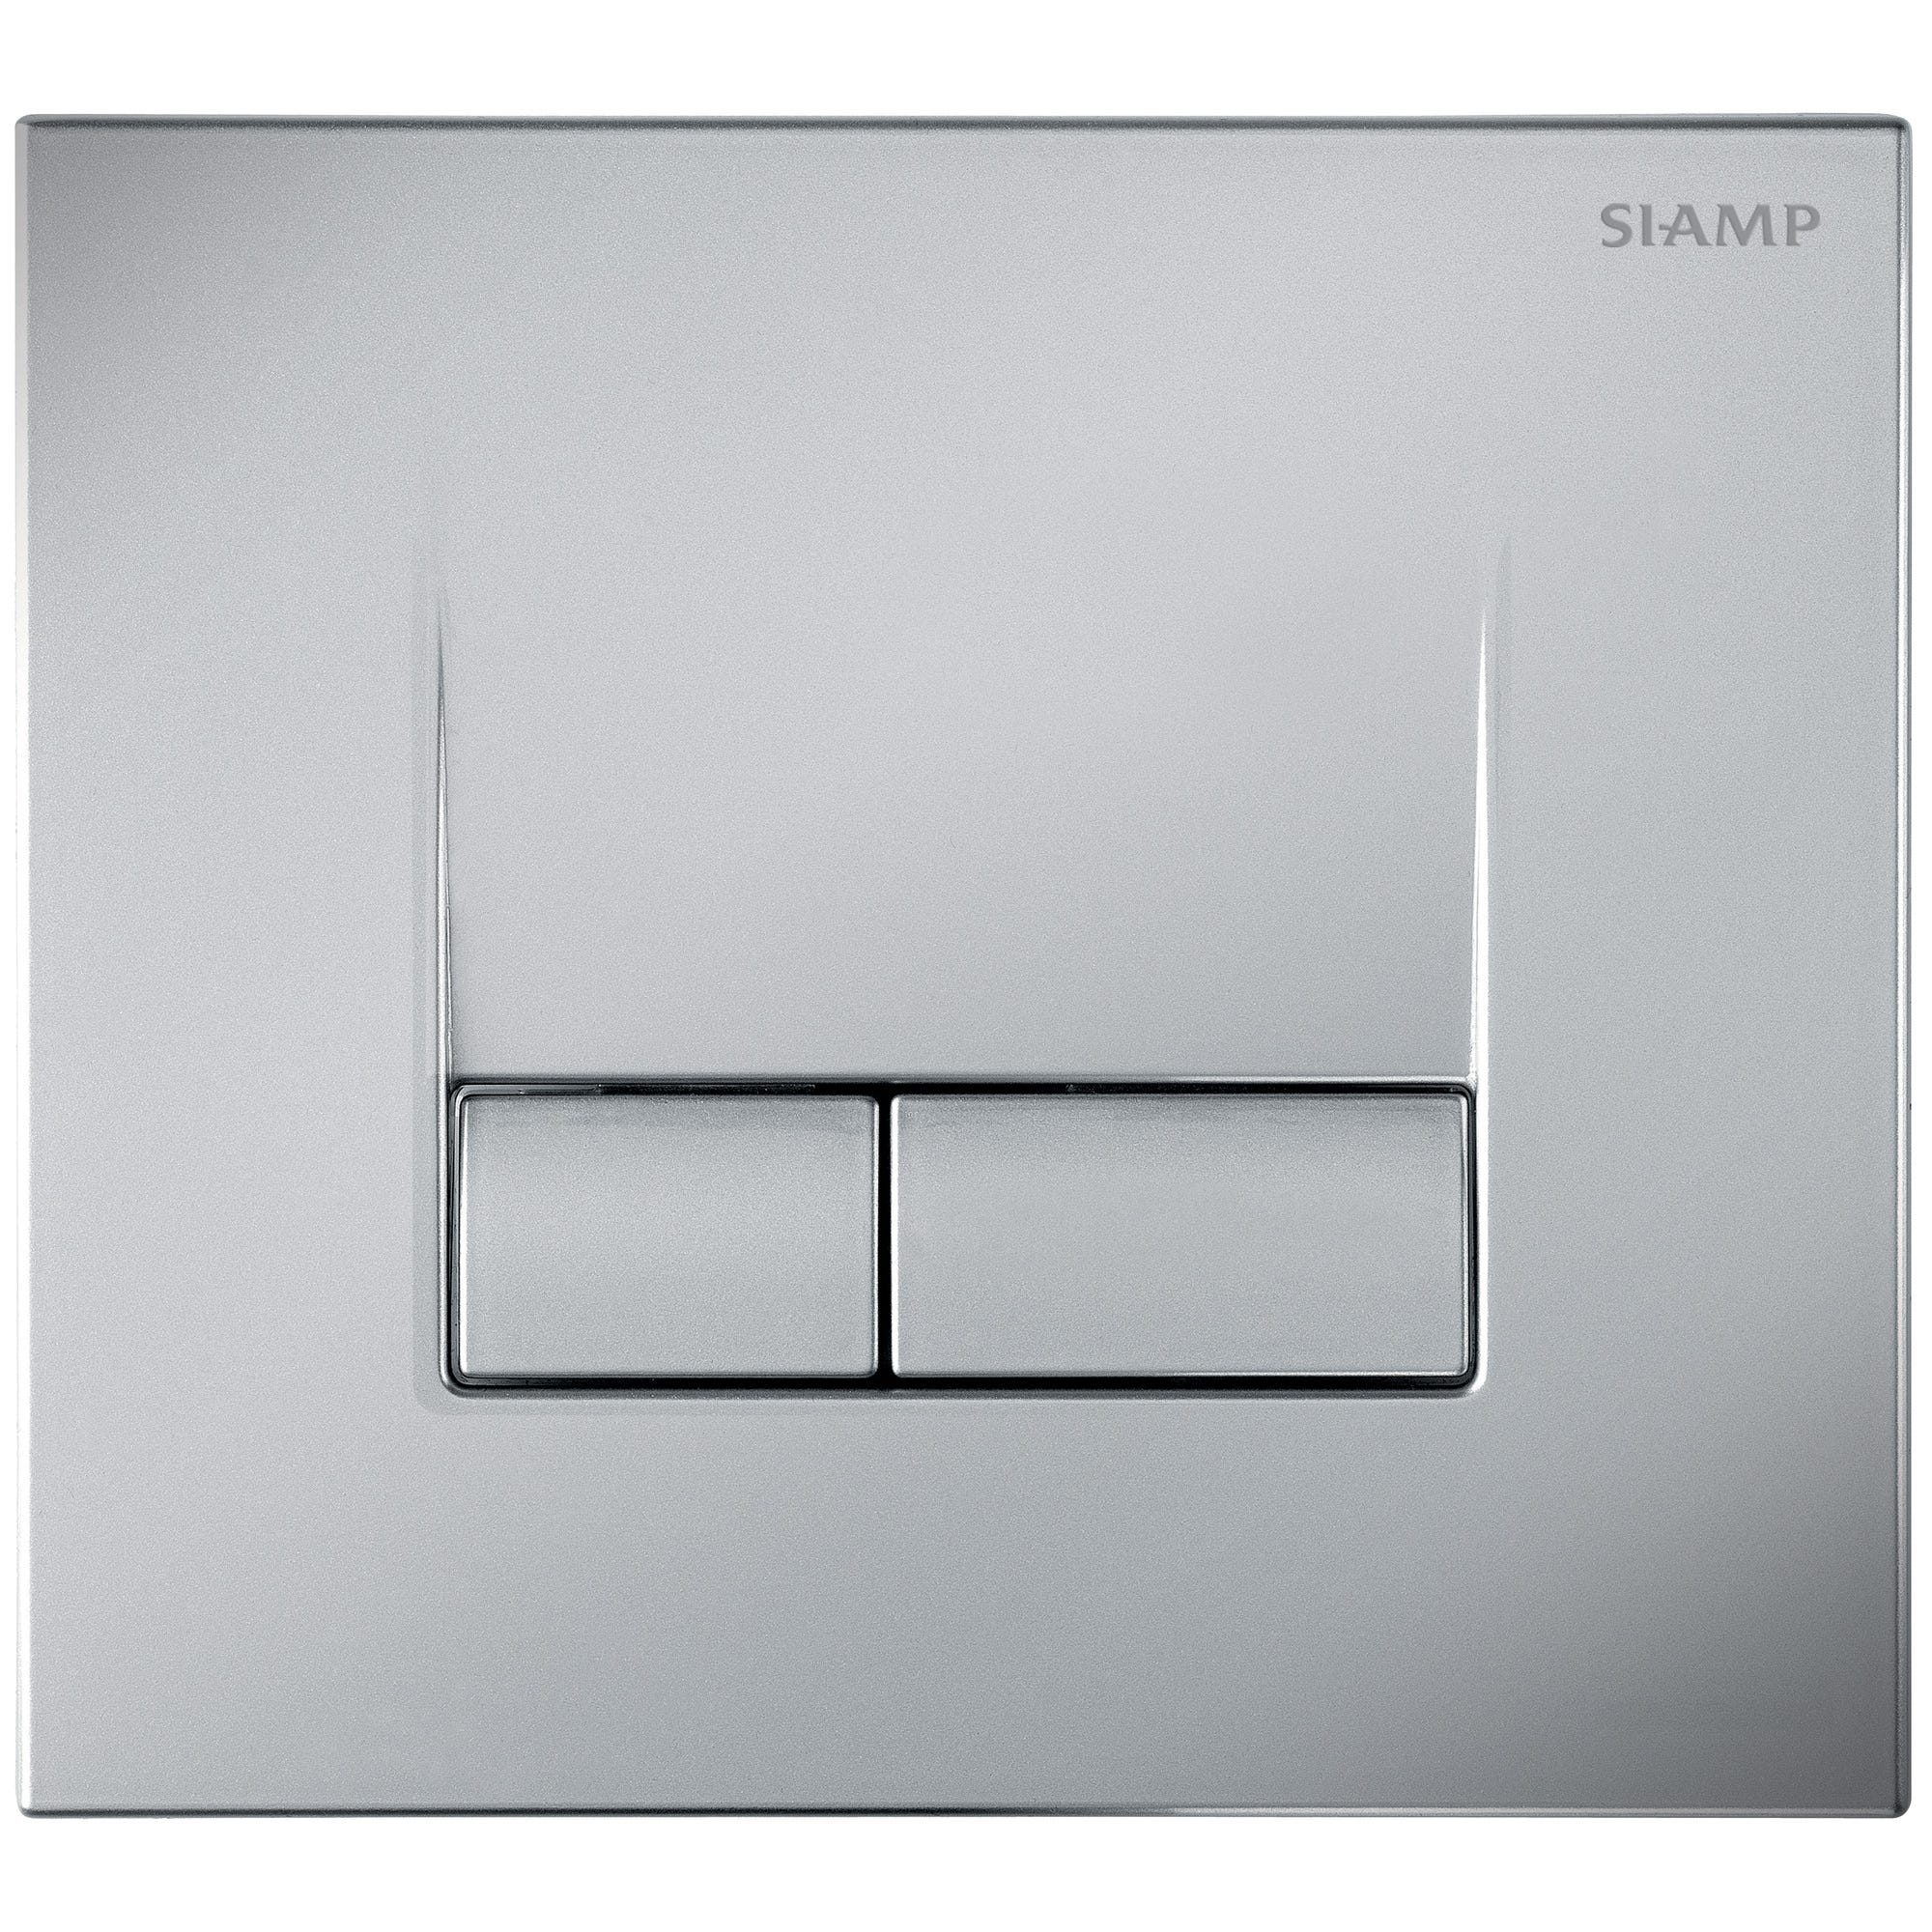 Plaque de commande pour WC suspendu aspect chromé mat clair anti-vandales/anti-empreintes Smart - SIAMP 1